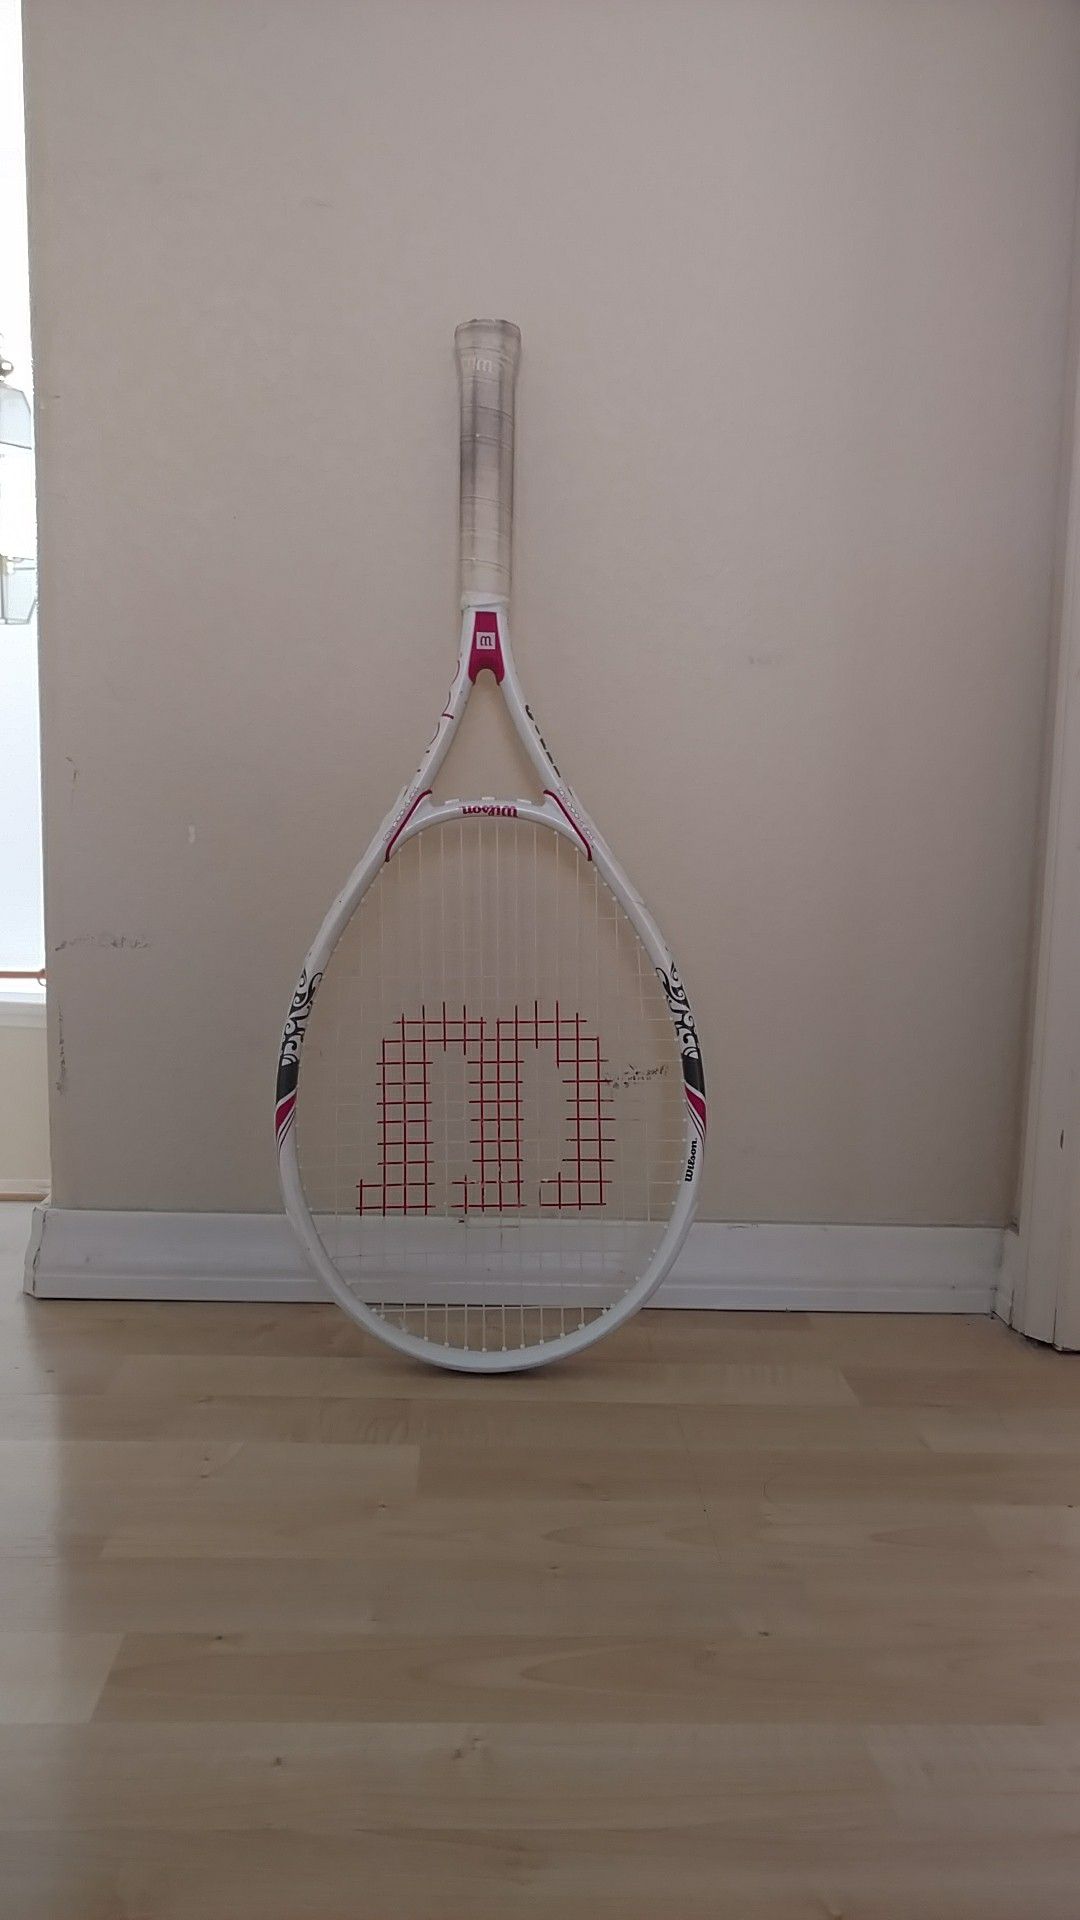 Wilson Women's Tennis Racket